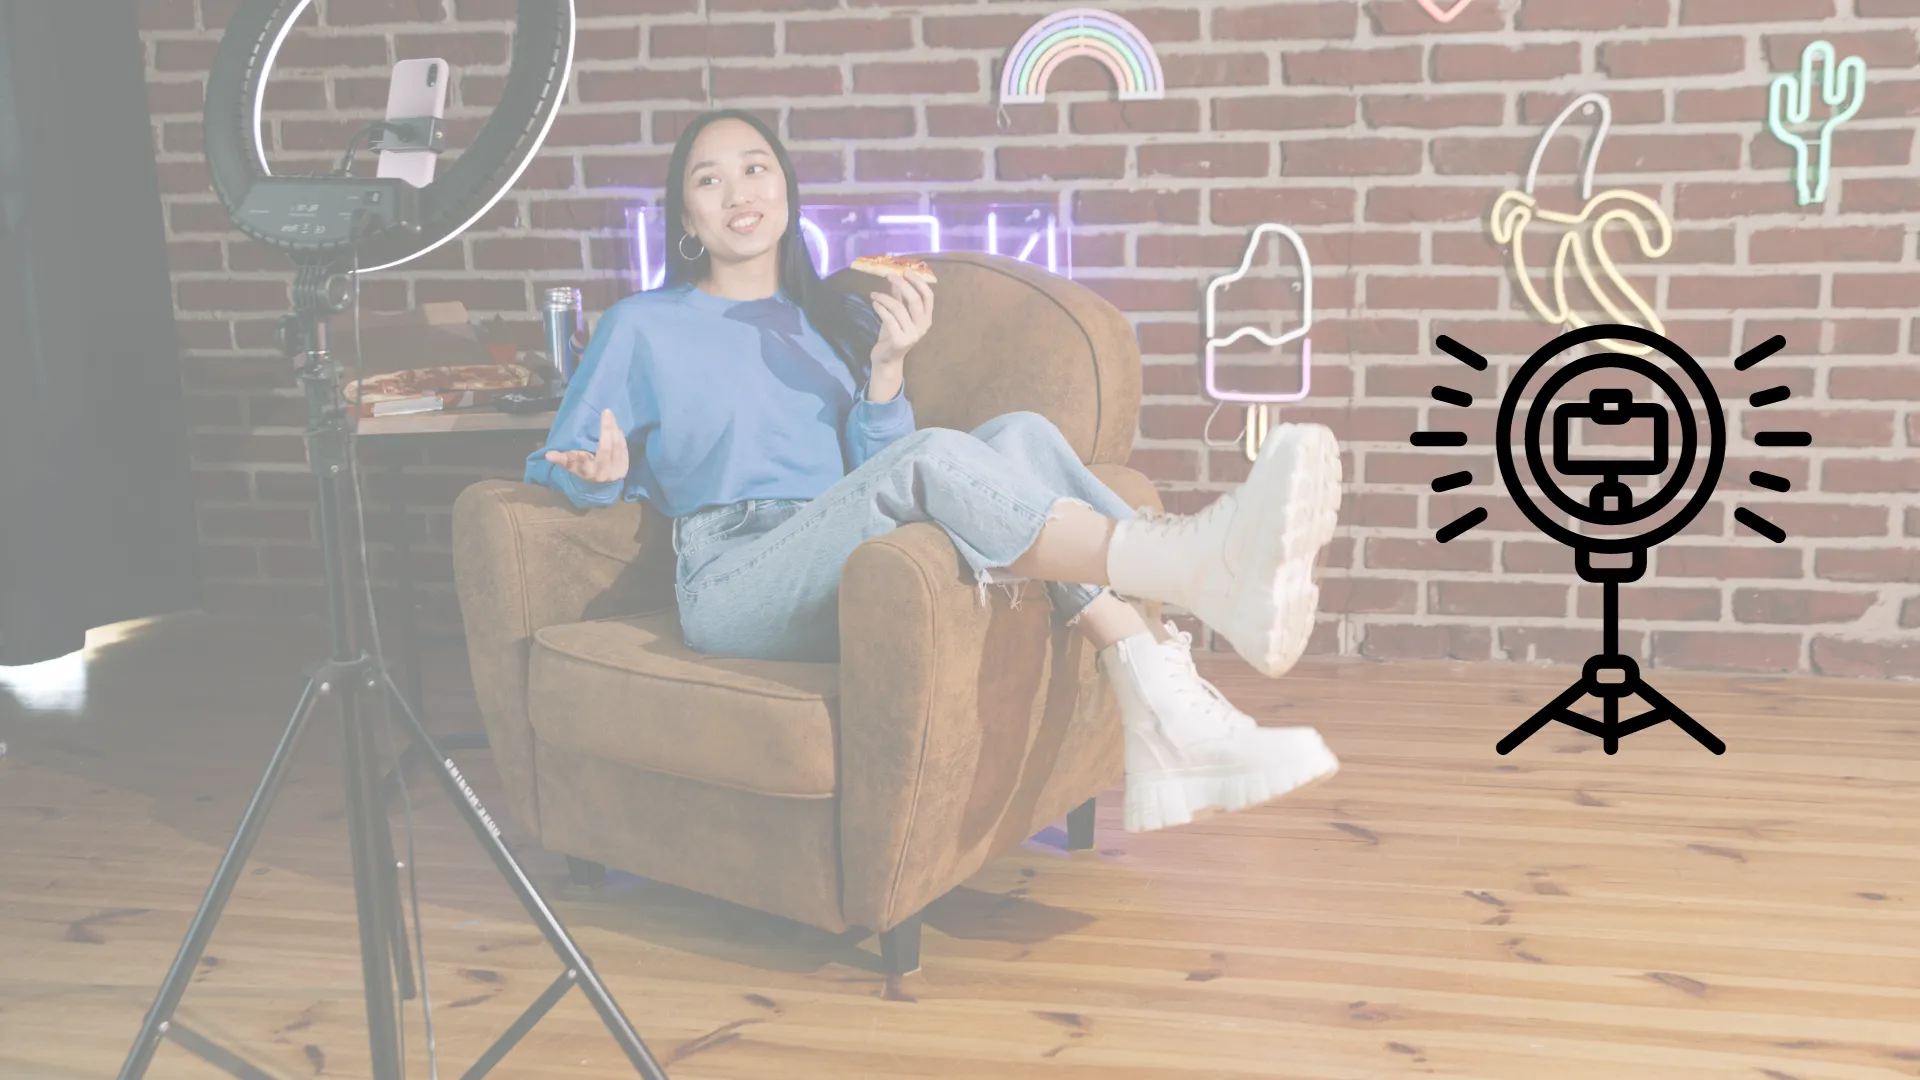 Mujer joven asiatica recostada en un sofá grabando contenido en una cuarto geek 